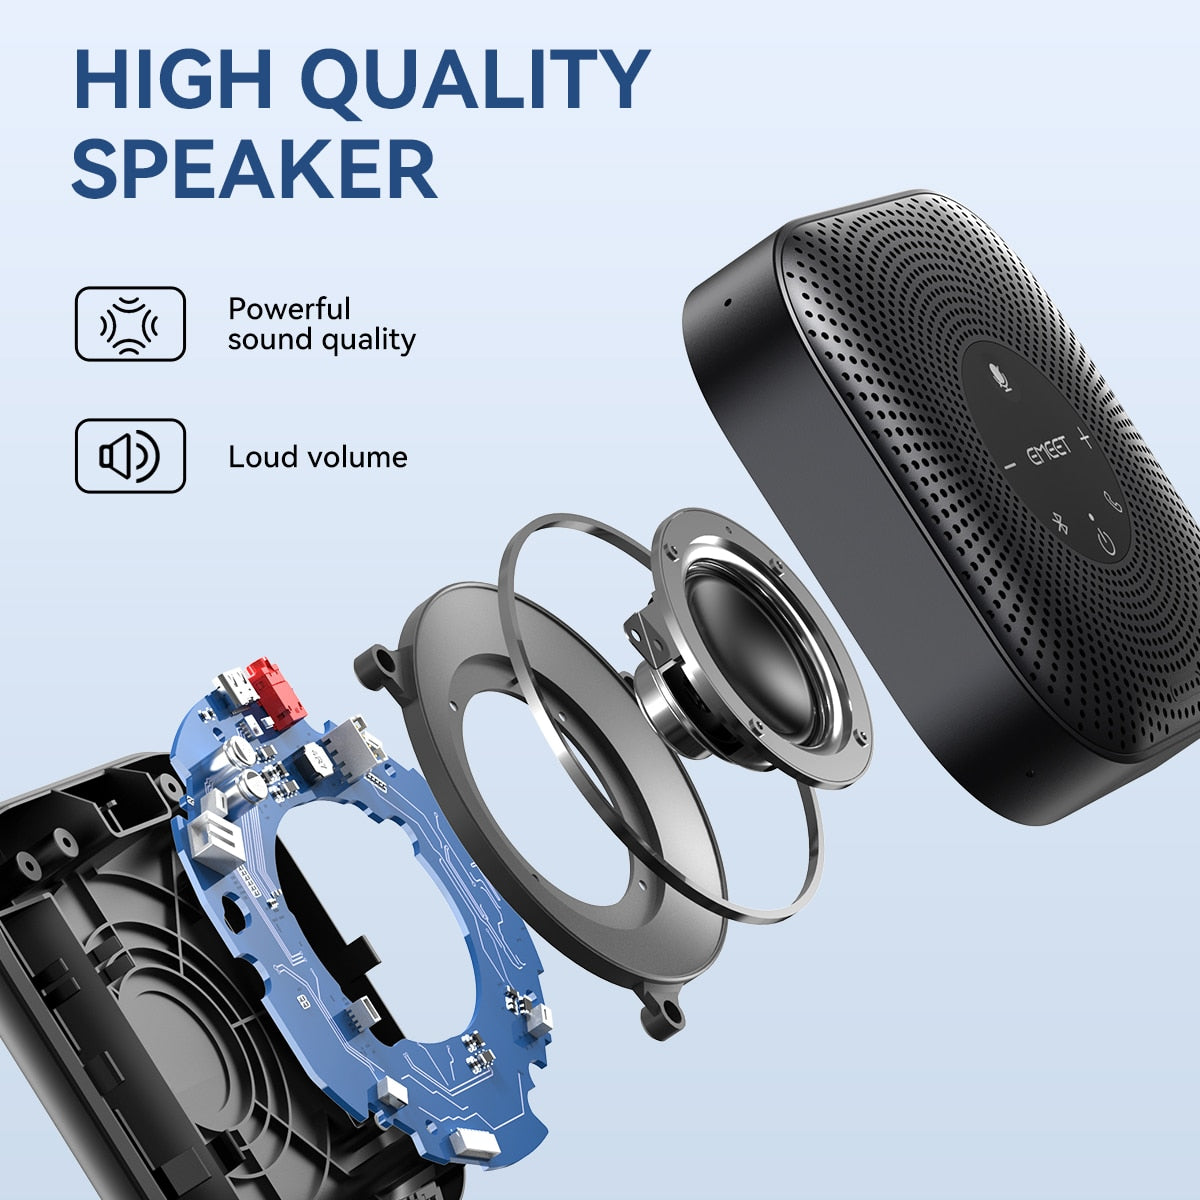 Speakerphone EMEET Bluetooth à réduction de bruit ( ) - Microphones Digital noWmad - Matériel télétravail : Équipez-vous pour une expérience 2.0 ! Équipements et accessoires de bureau pour un télétravail confortable, efficace et flexible. Aménagez votre espace et gagnez en ergonomie. Casques, chaises, sous-mains, mouse jigglers... Exploitez tout le potentiel du travail à distance pour trouver votre équilibre, en voyage comme à la maison.